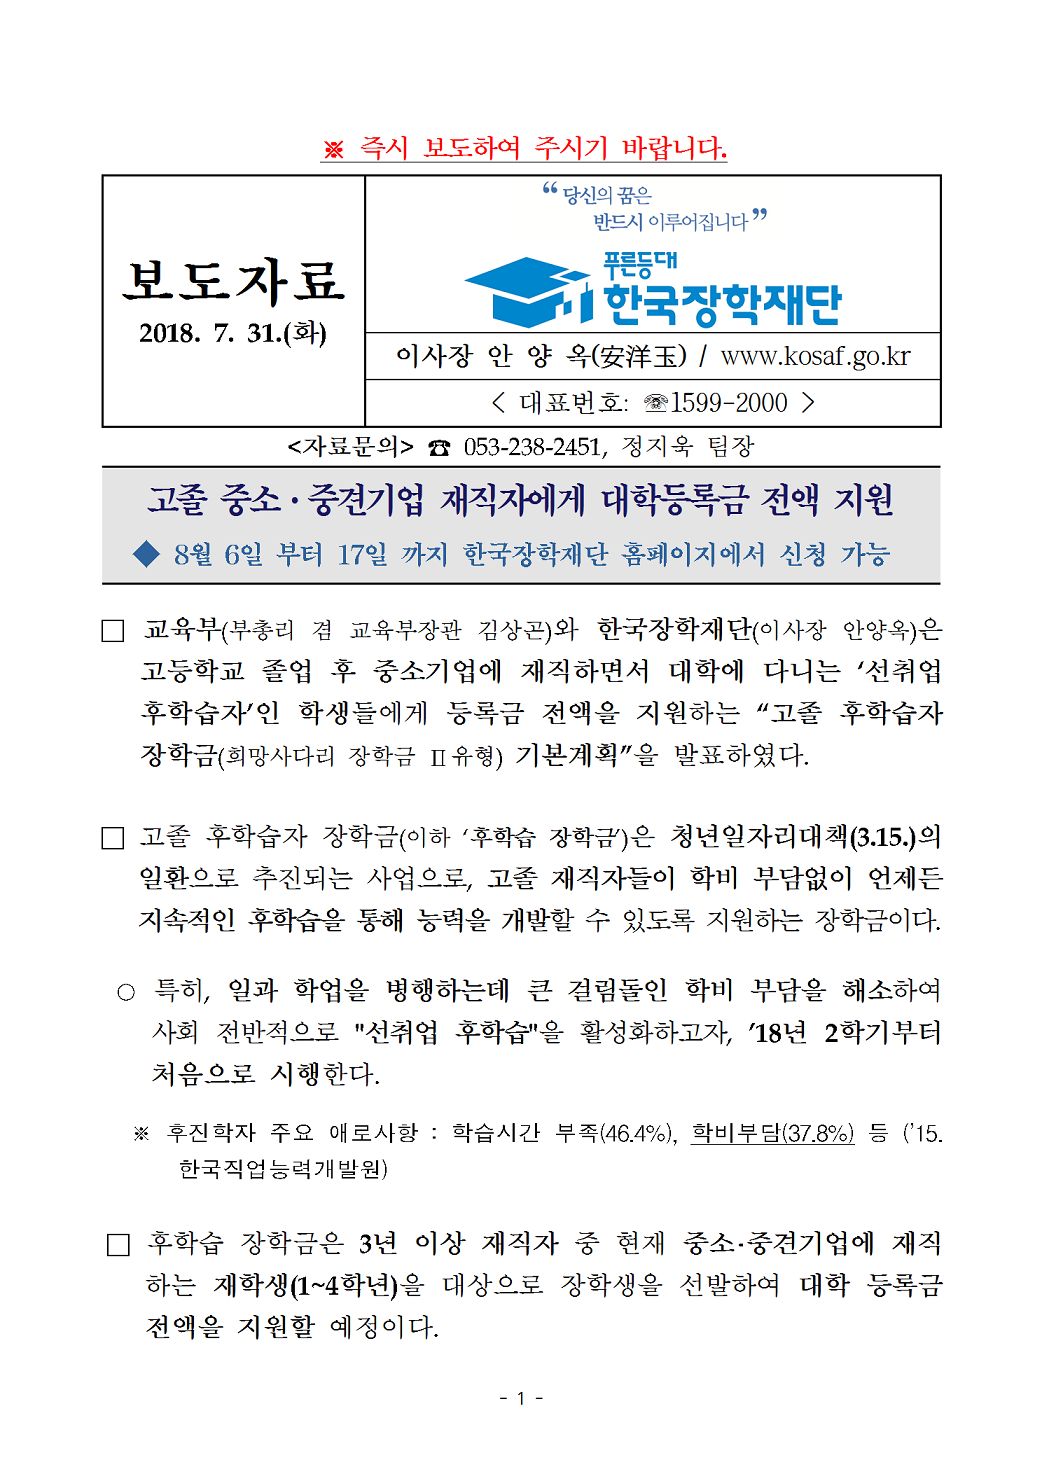 07-31(화)[보도자료] 고졸 후학습자 장학금(희망사다리Ⅱ 유형)001.png